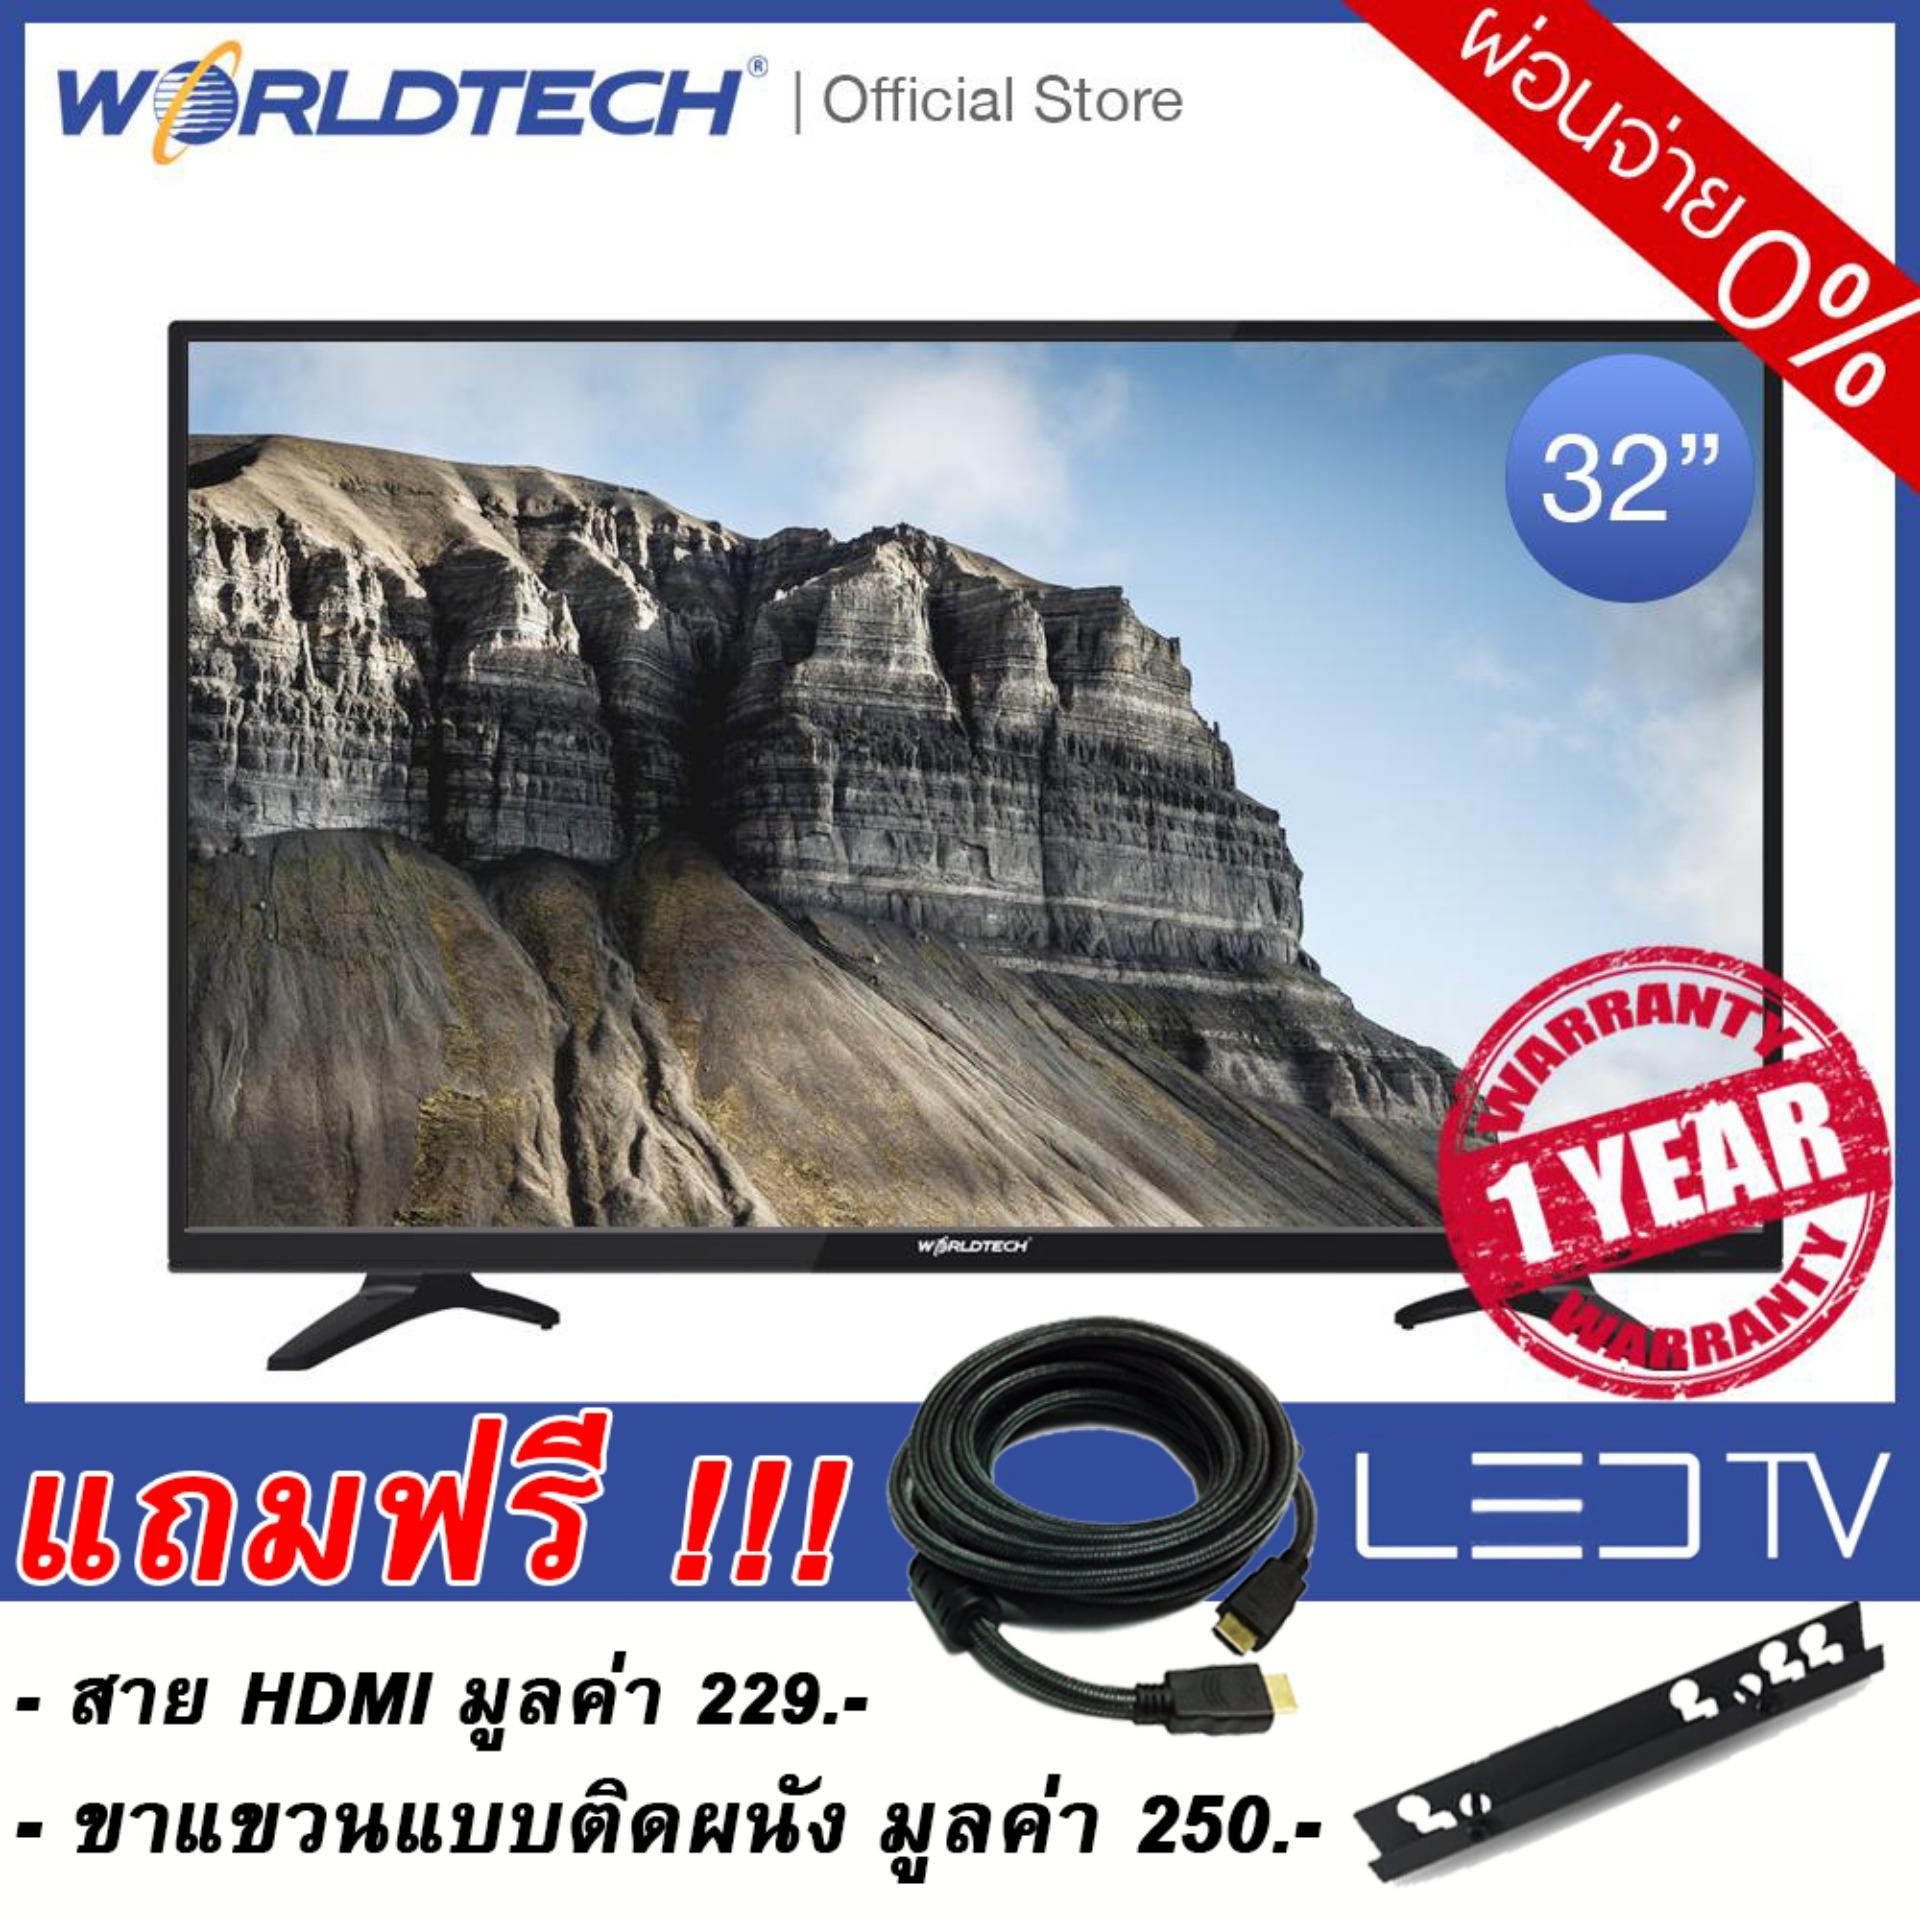 Worldtech LEDTV (แอลอีดีทีวี) ขนาด 32 นิ้ว รุ่น WT-LED3201